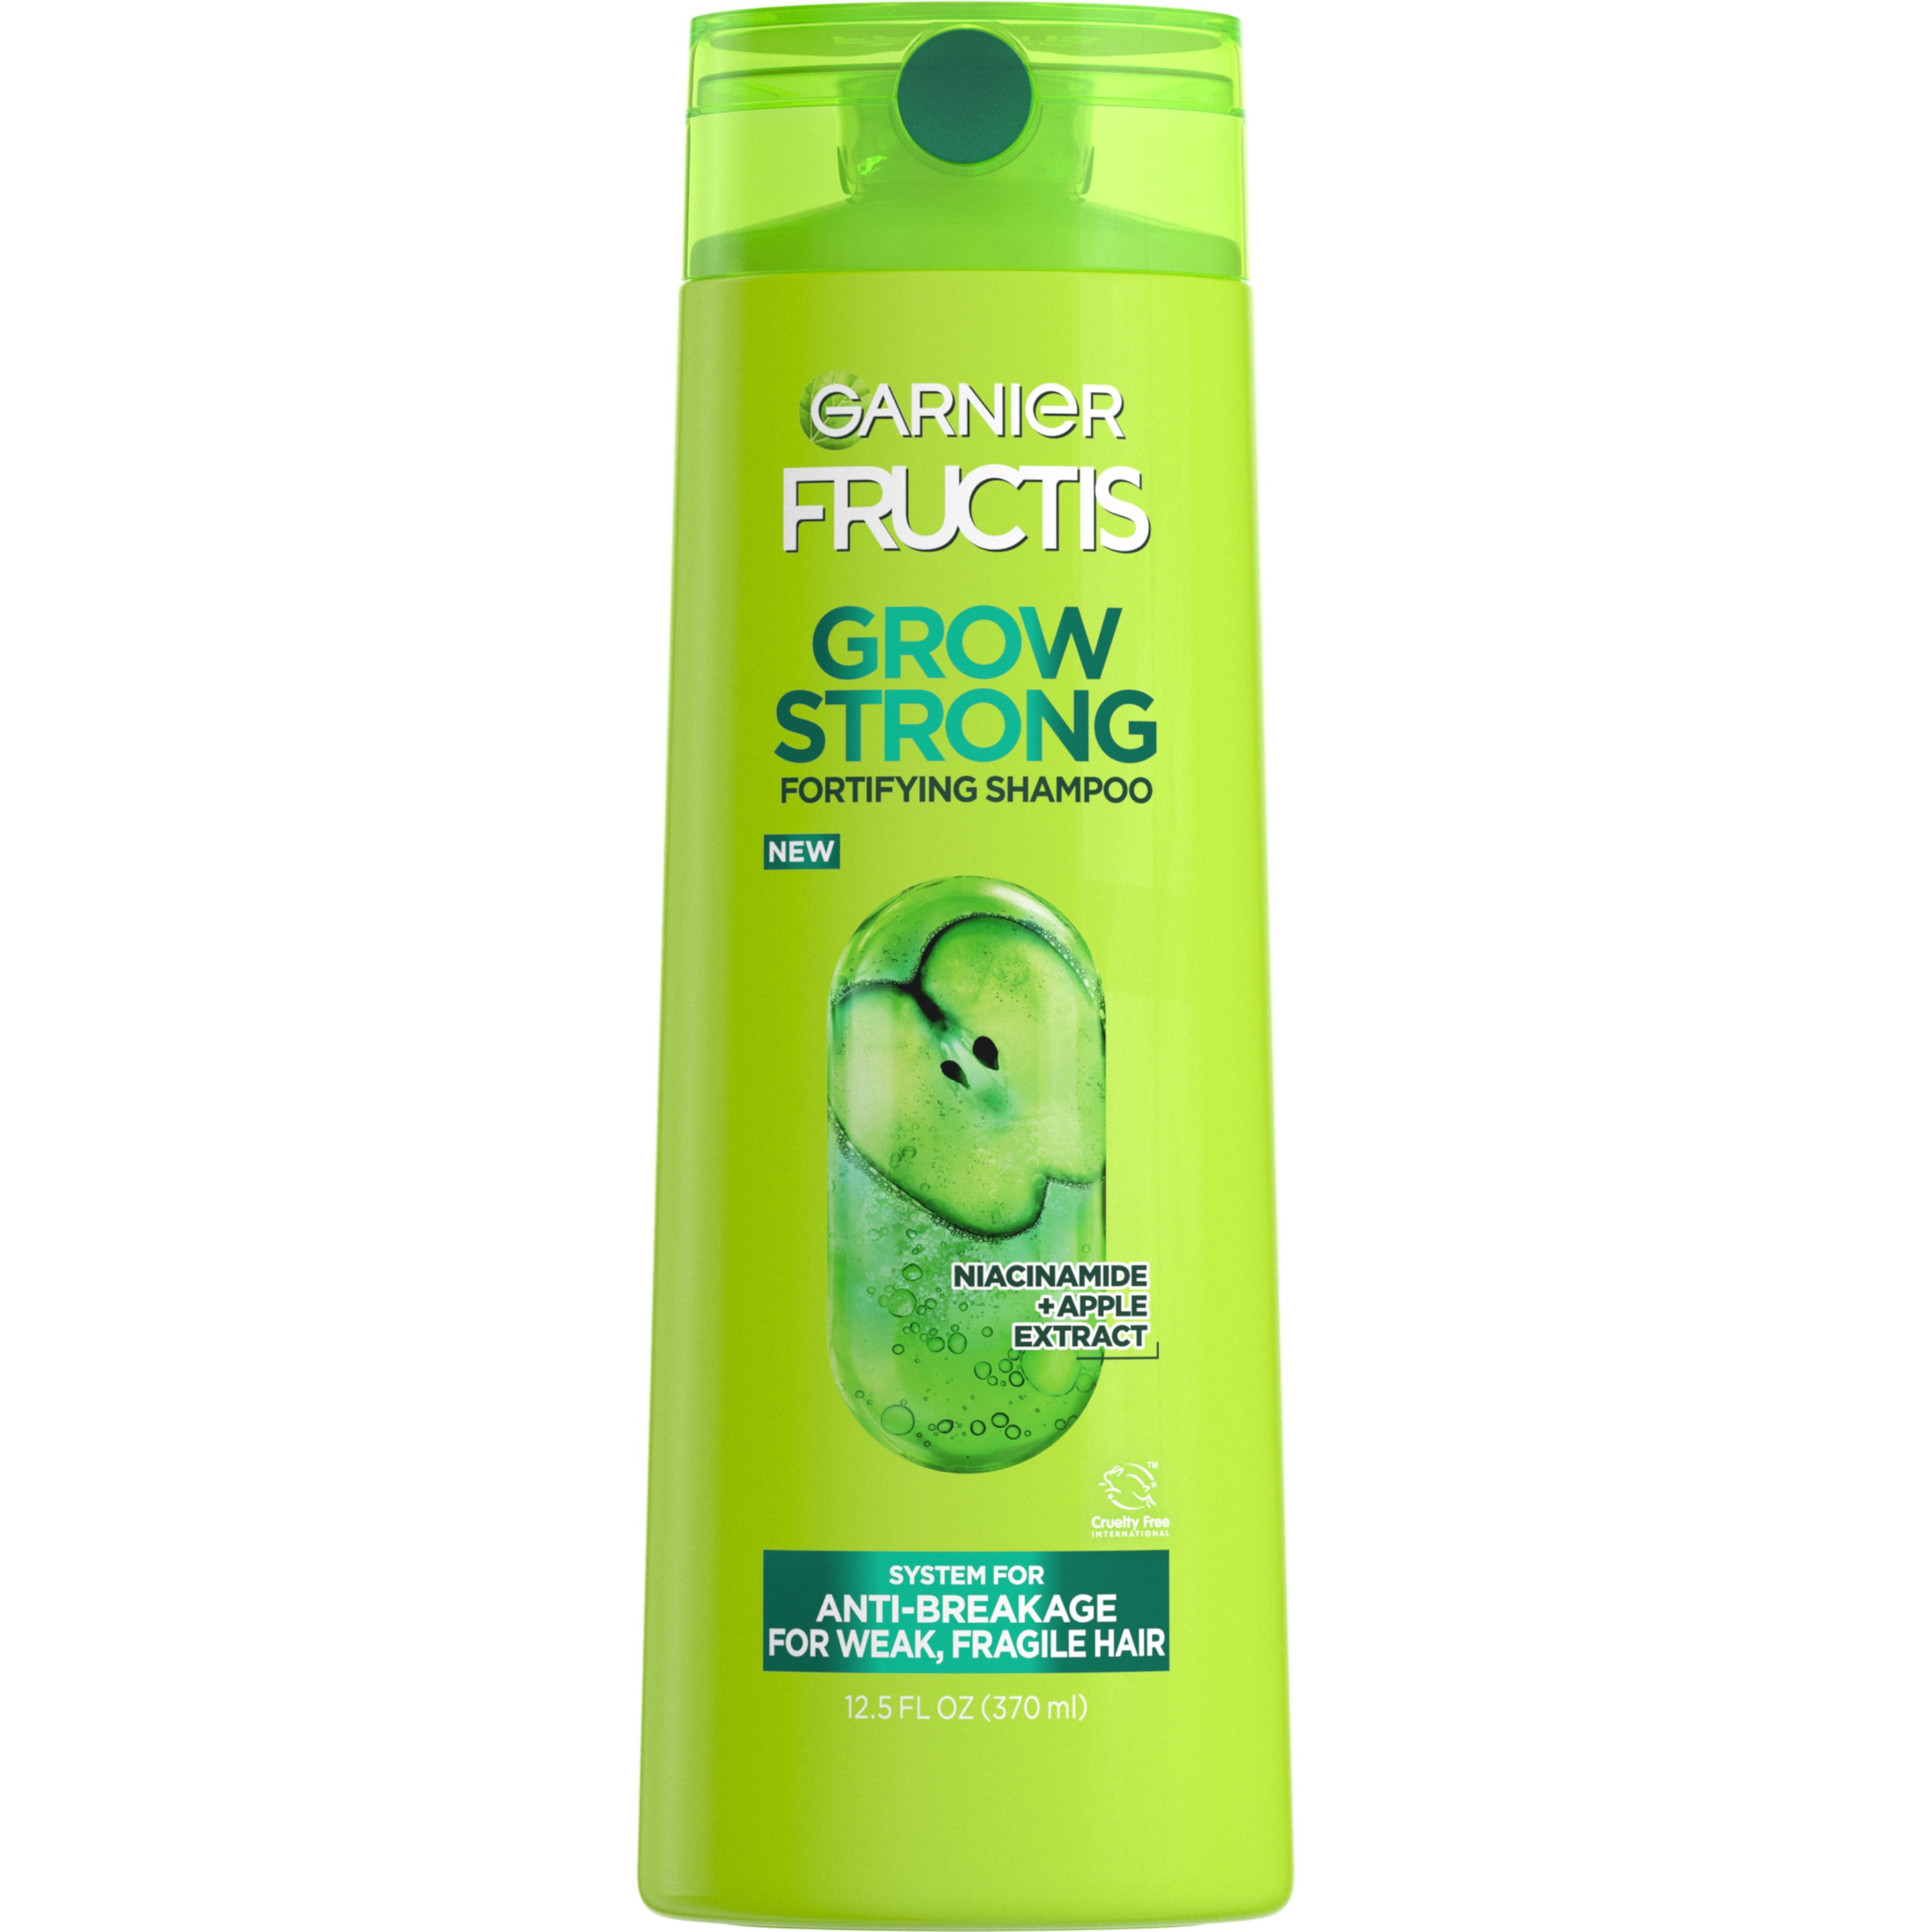 Garnier Fructis Grow Strong Shampoo, For Stronger, Healthier, Shinier Hair,   fl oz 